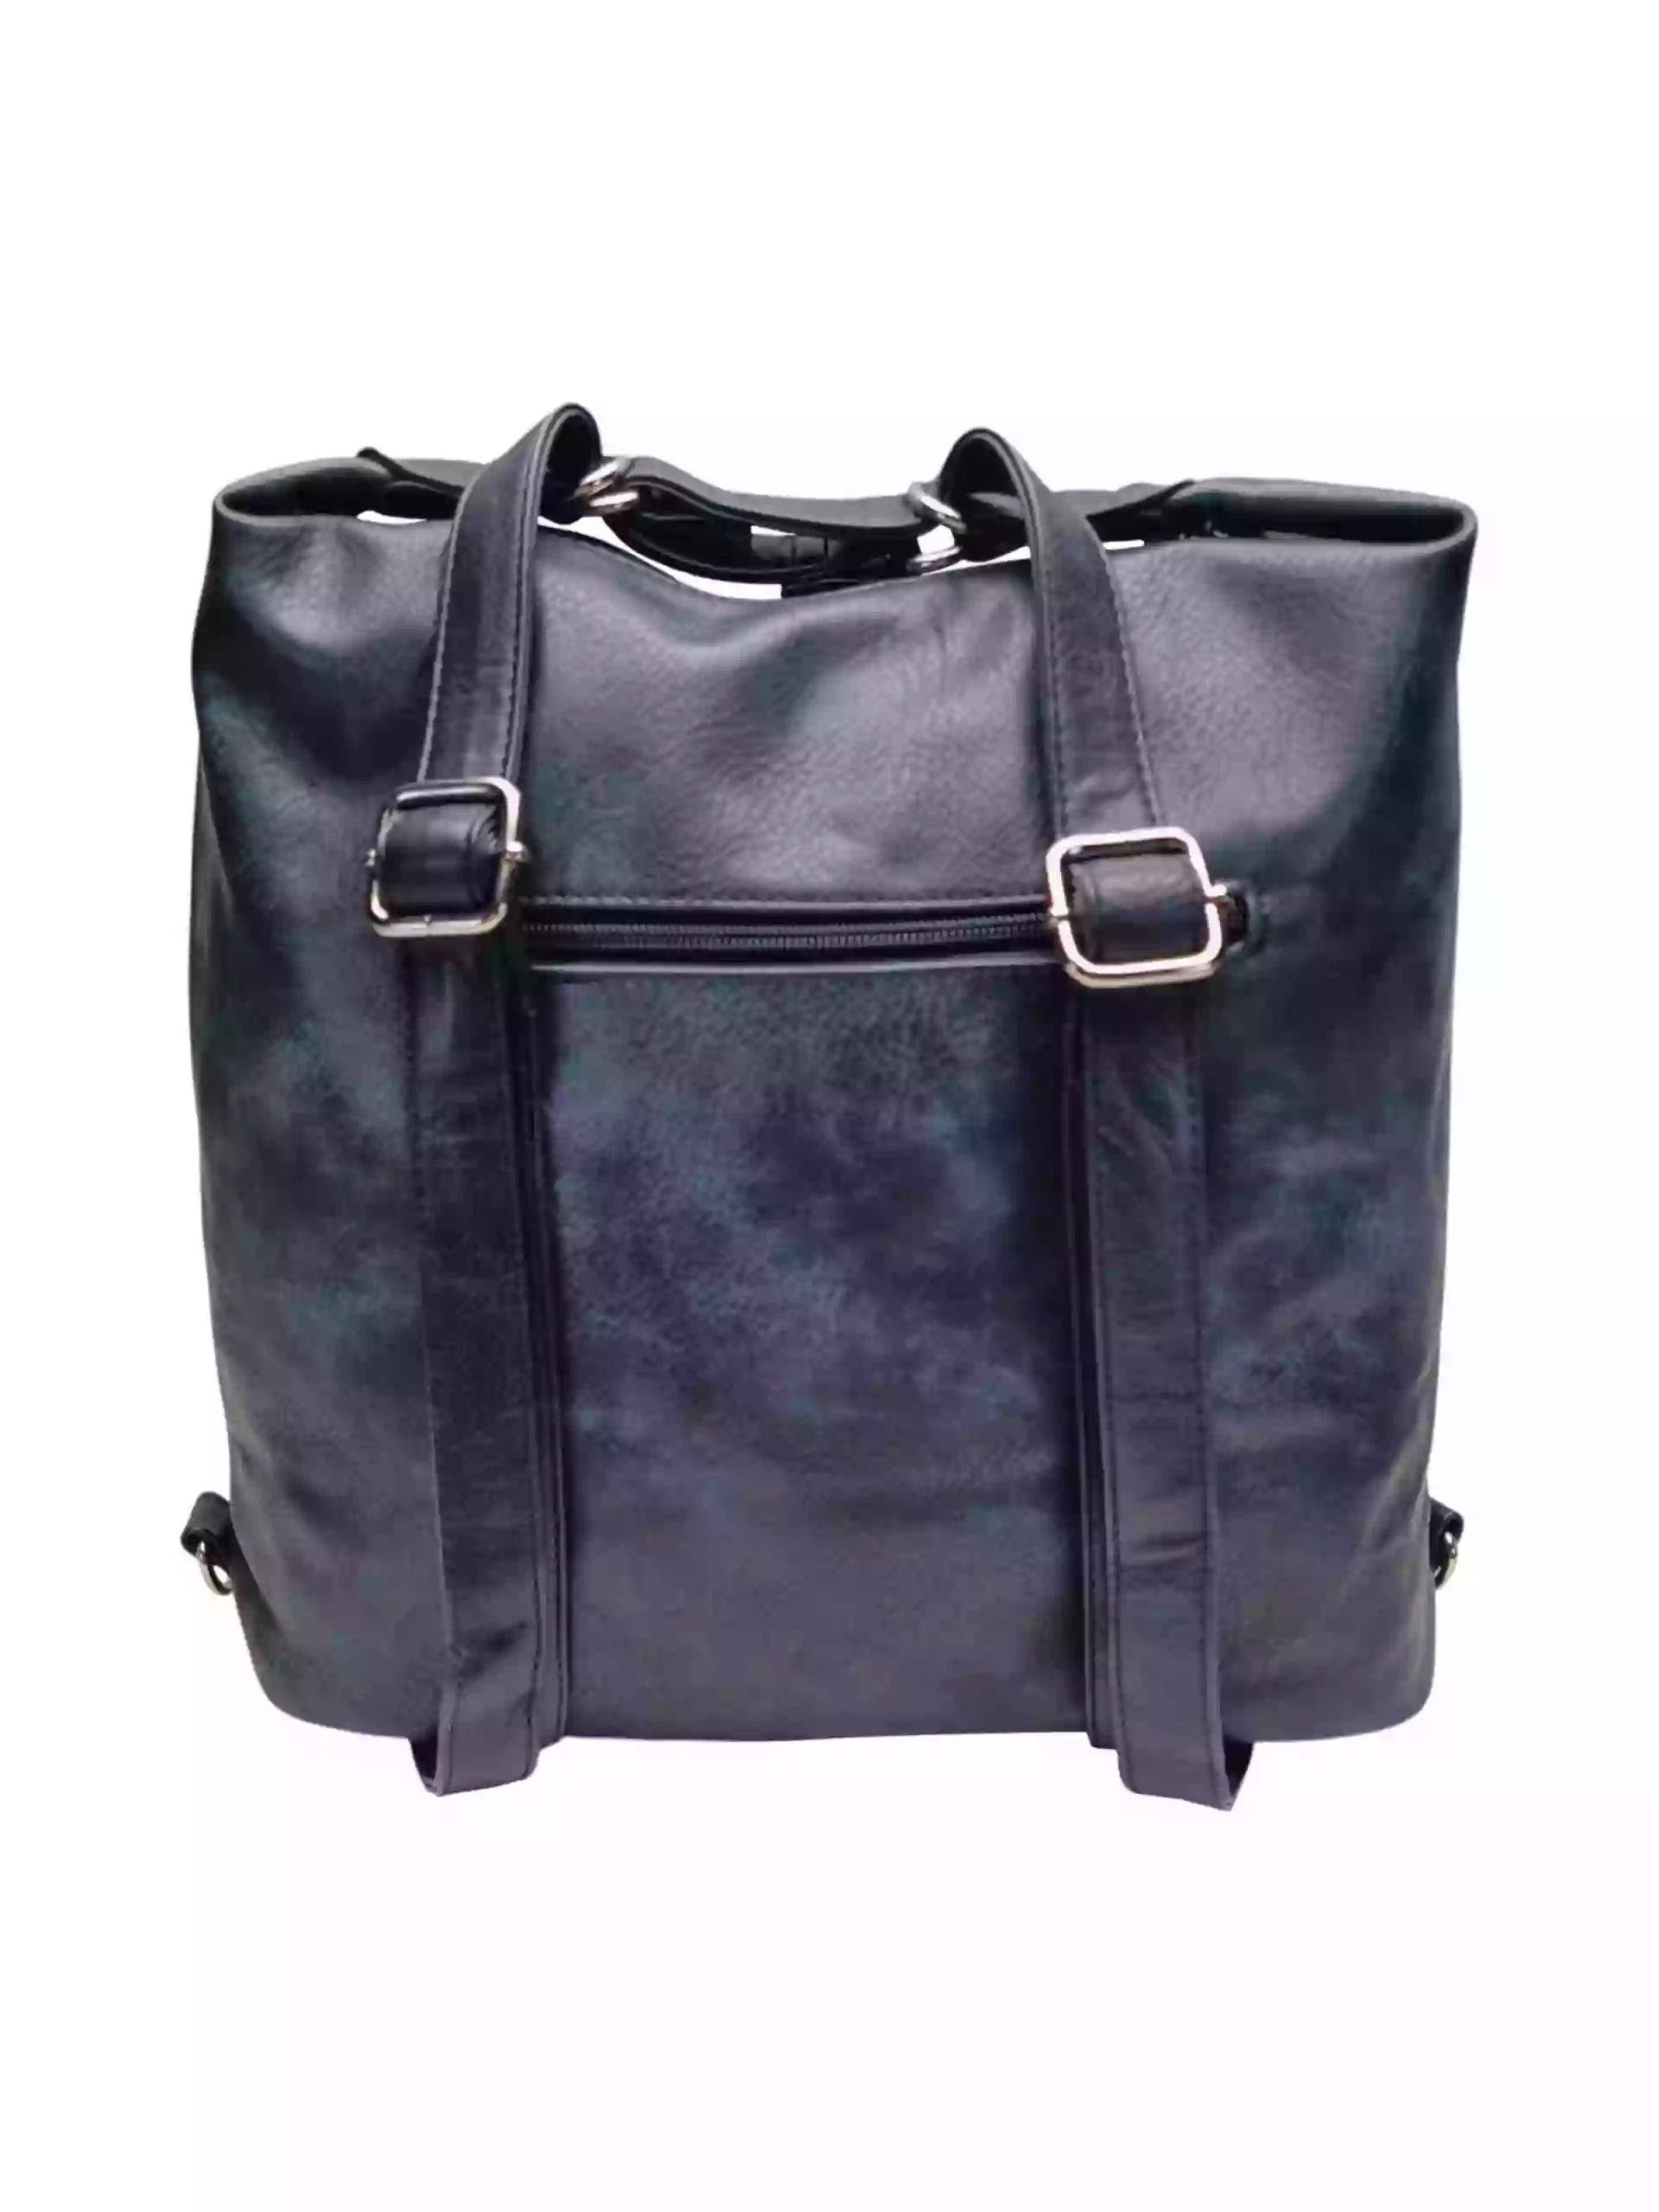 Velký tmavě modrý kabelko-batoh 2v1 s praktickou kapsou, Tapple, H190010N+, zadní strana kabelko-batohu 2v1 s popruhy